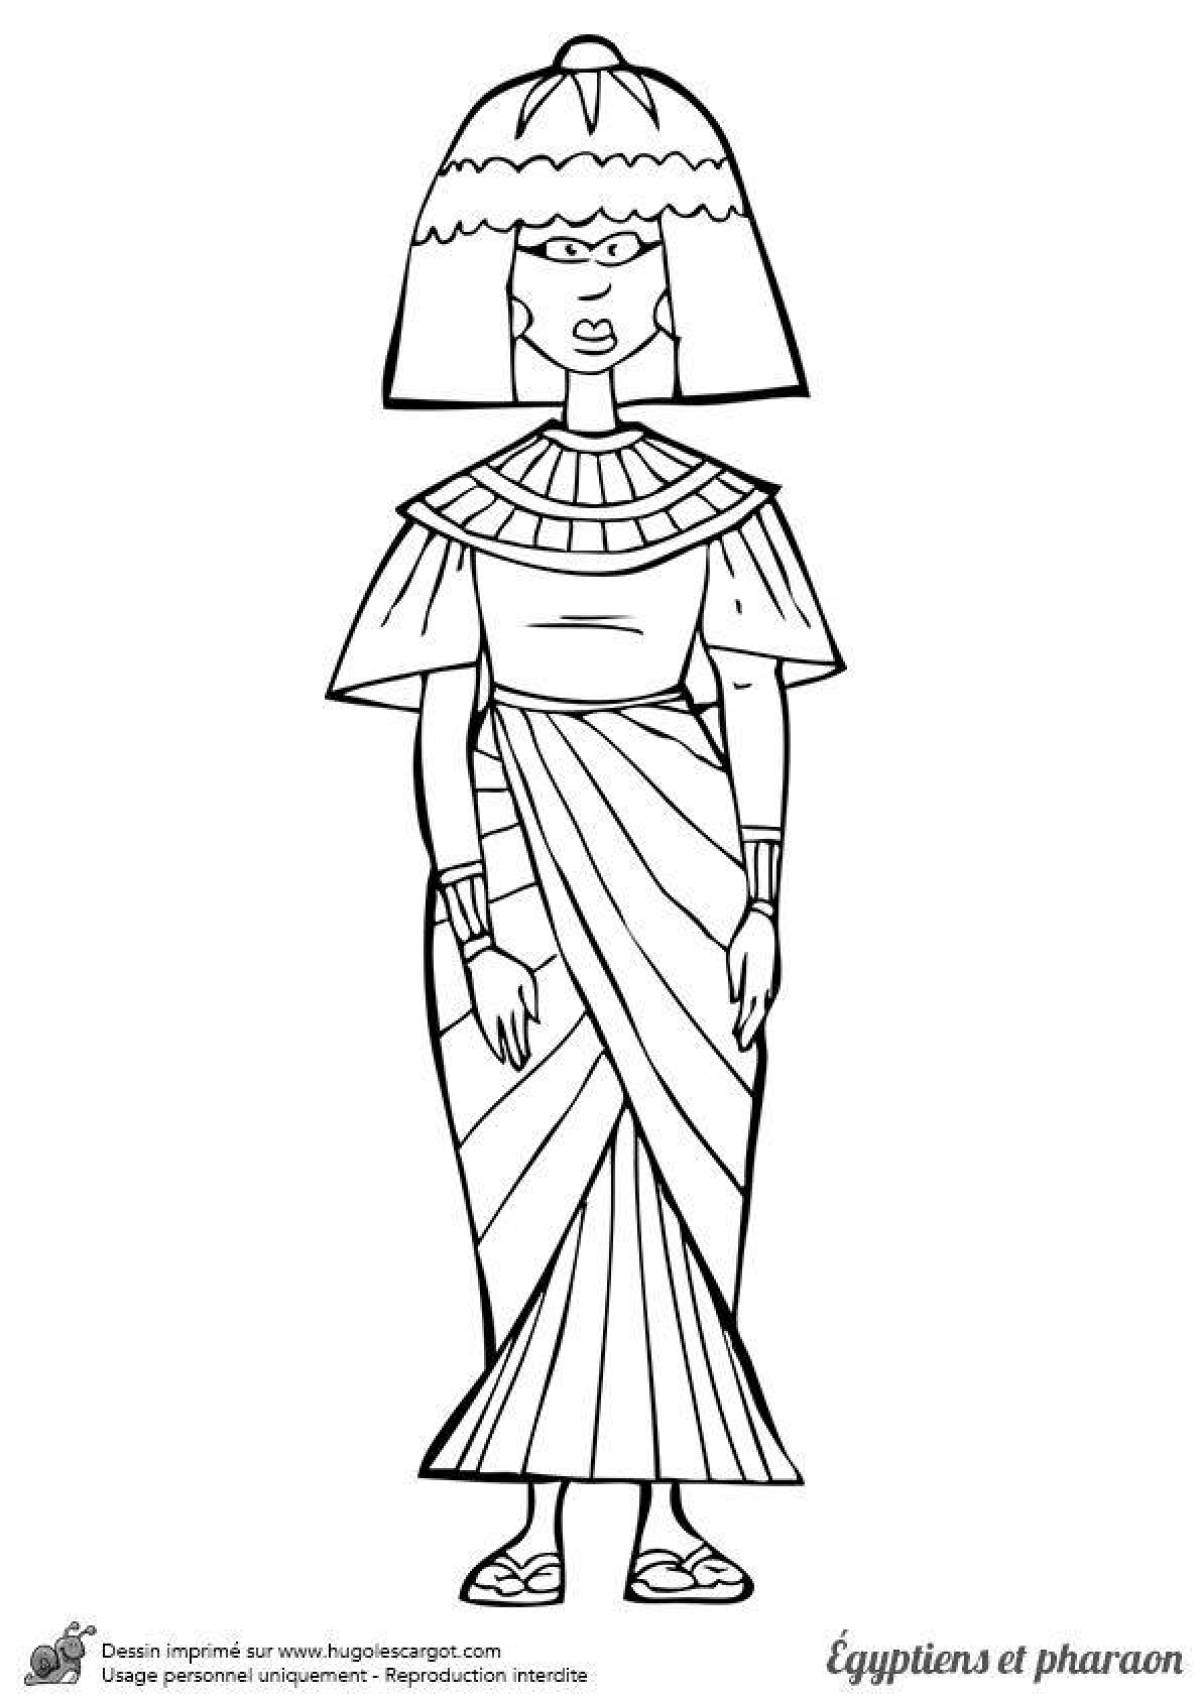 Рисование 5 класс фараон